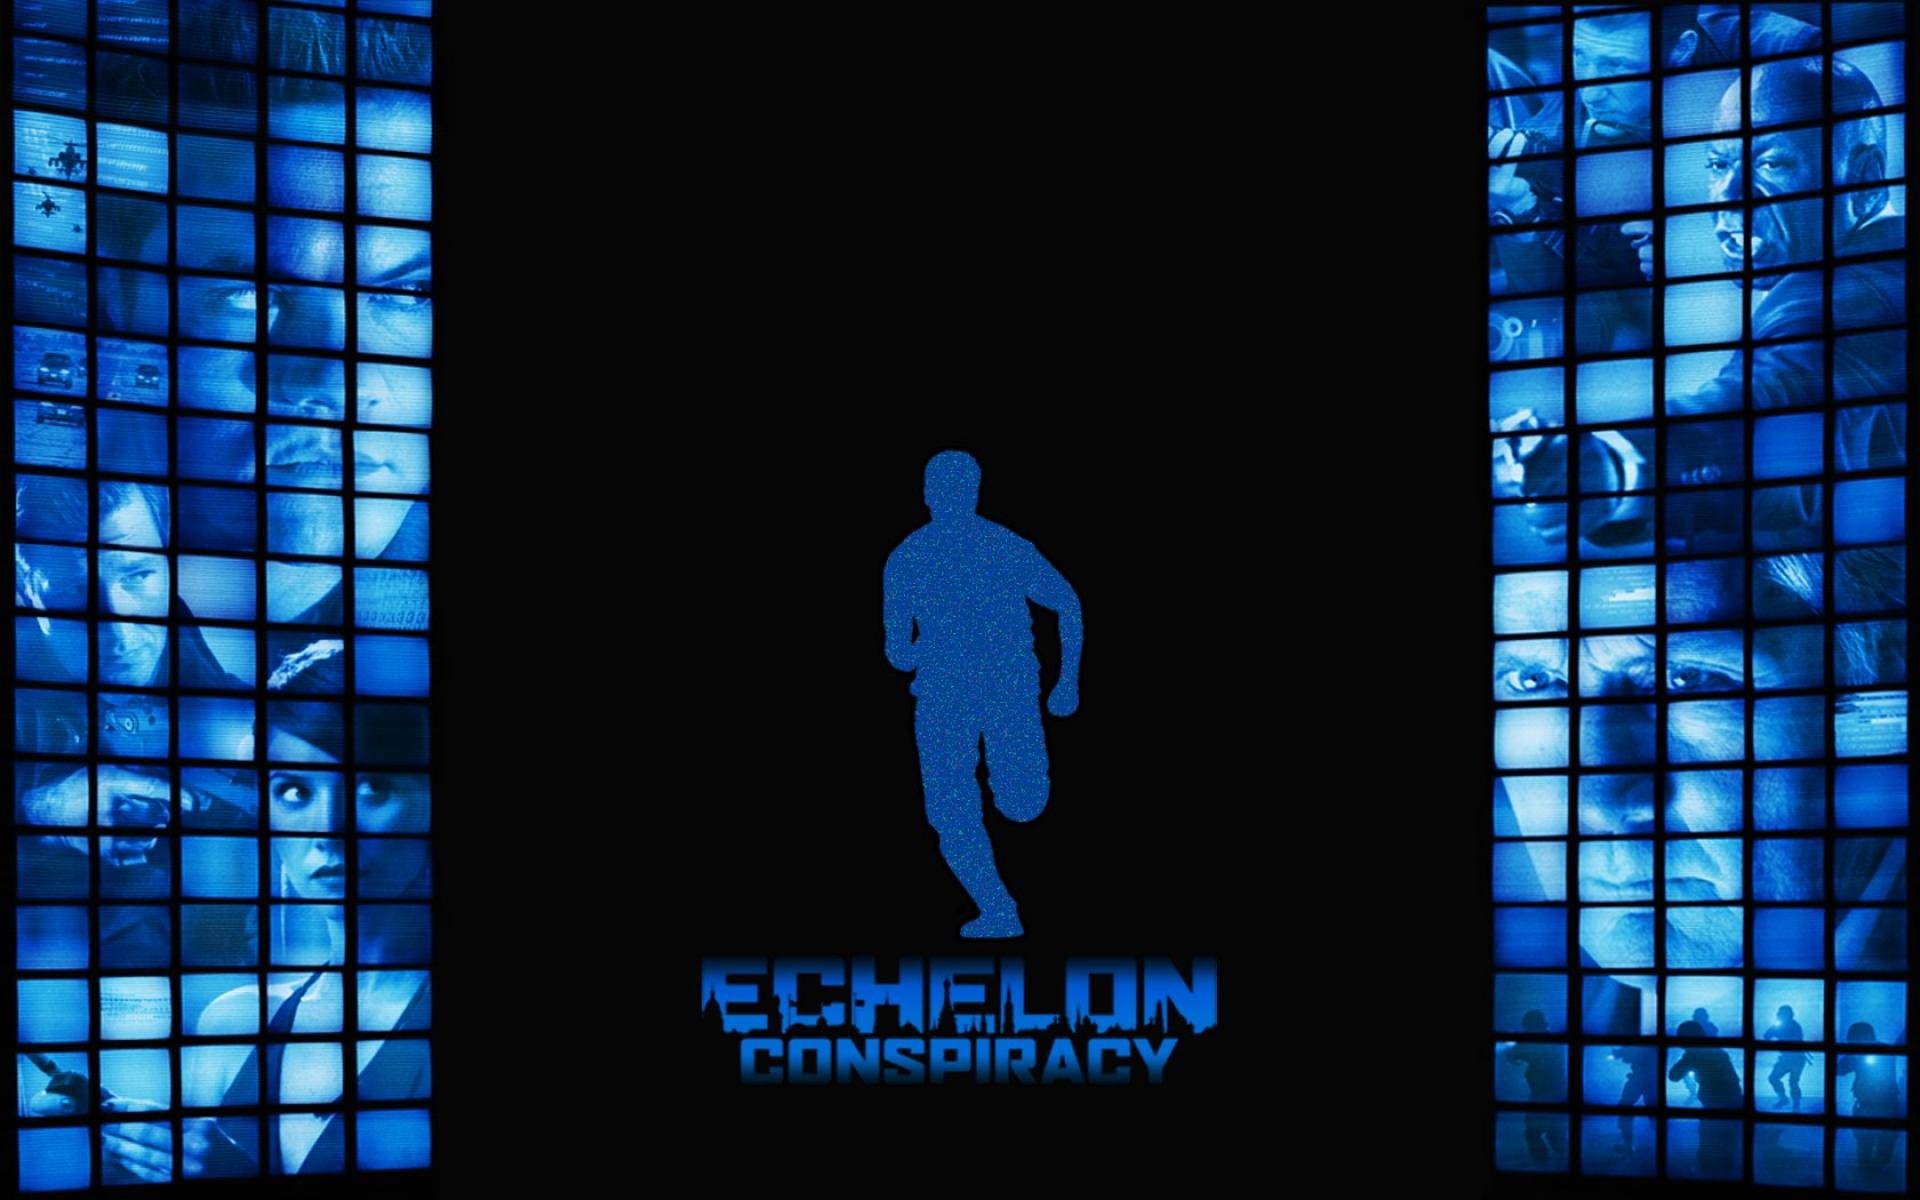 Echelon Conspiracy HD photos